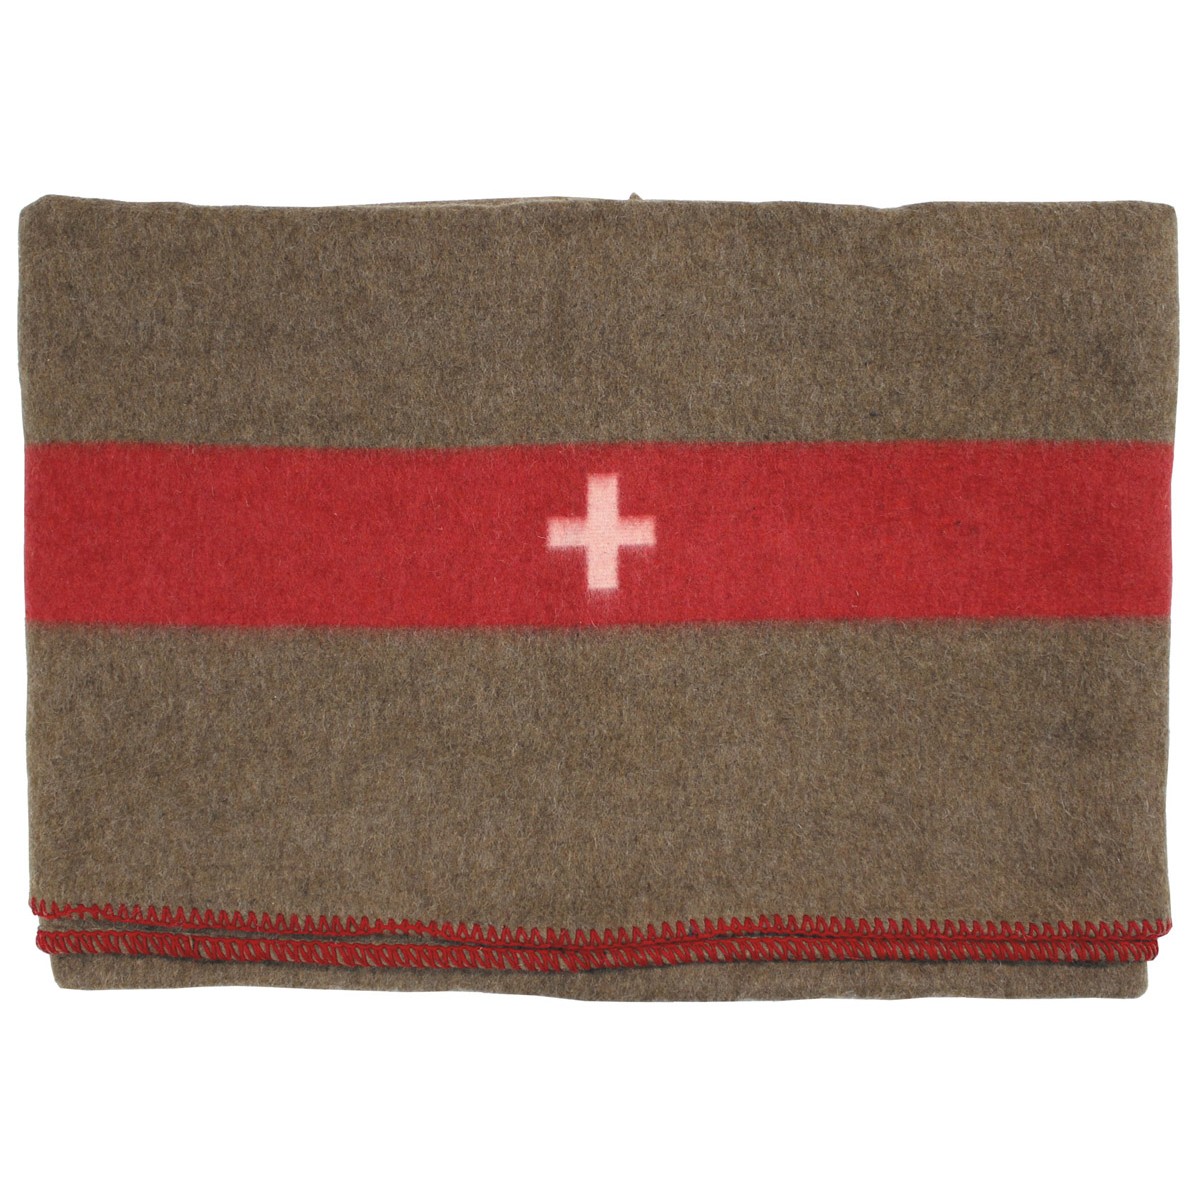 Schweizer Armee Decke Braun Wolldecke Wool Blanket CH Army